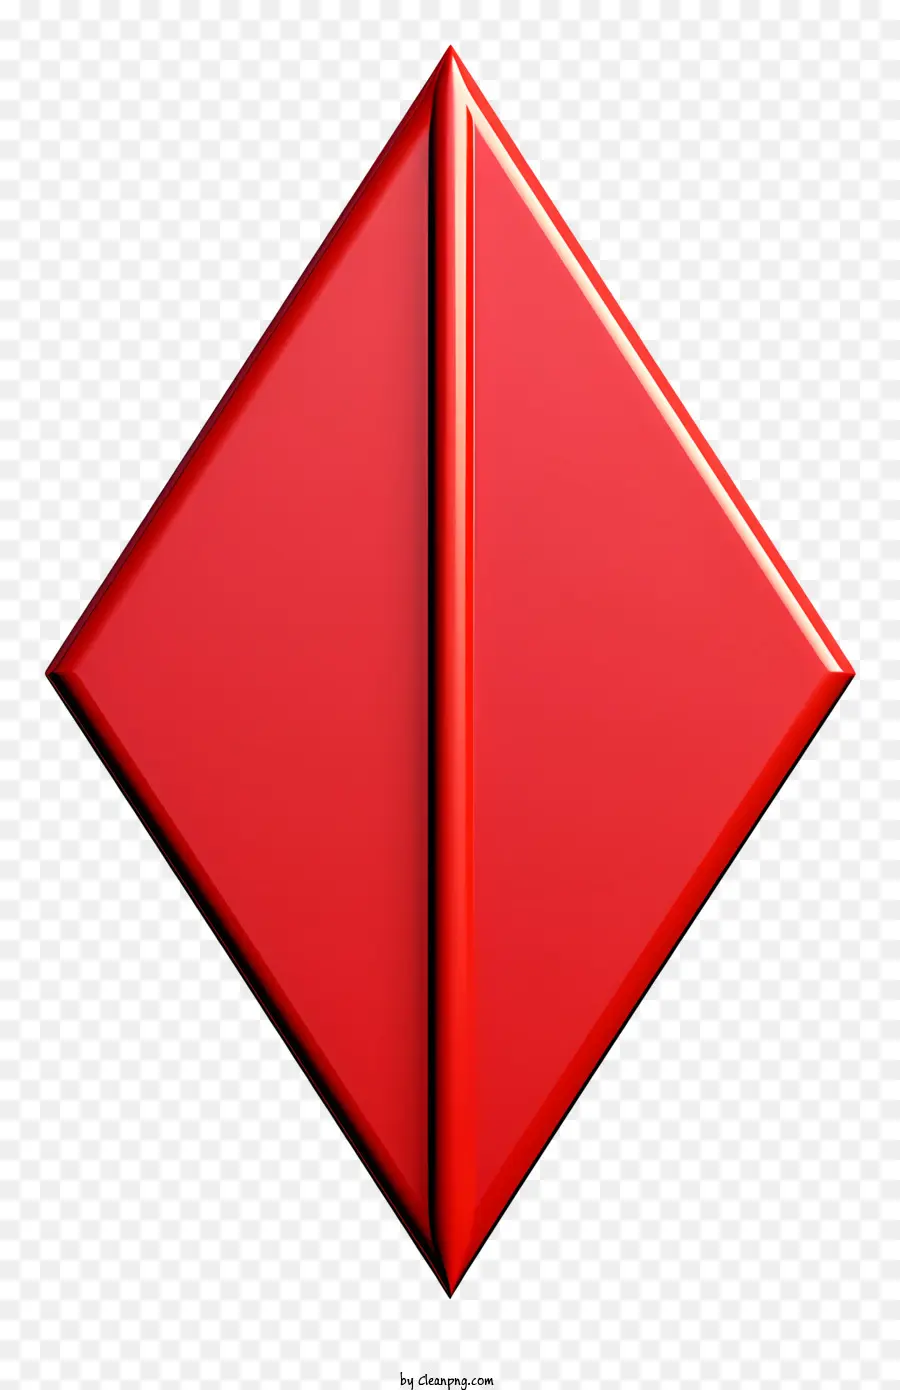 mũi tên đỏ - Tam giác kim loại/nhựa màu đỏ để sử dụng trang trí